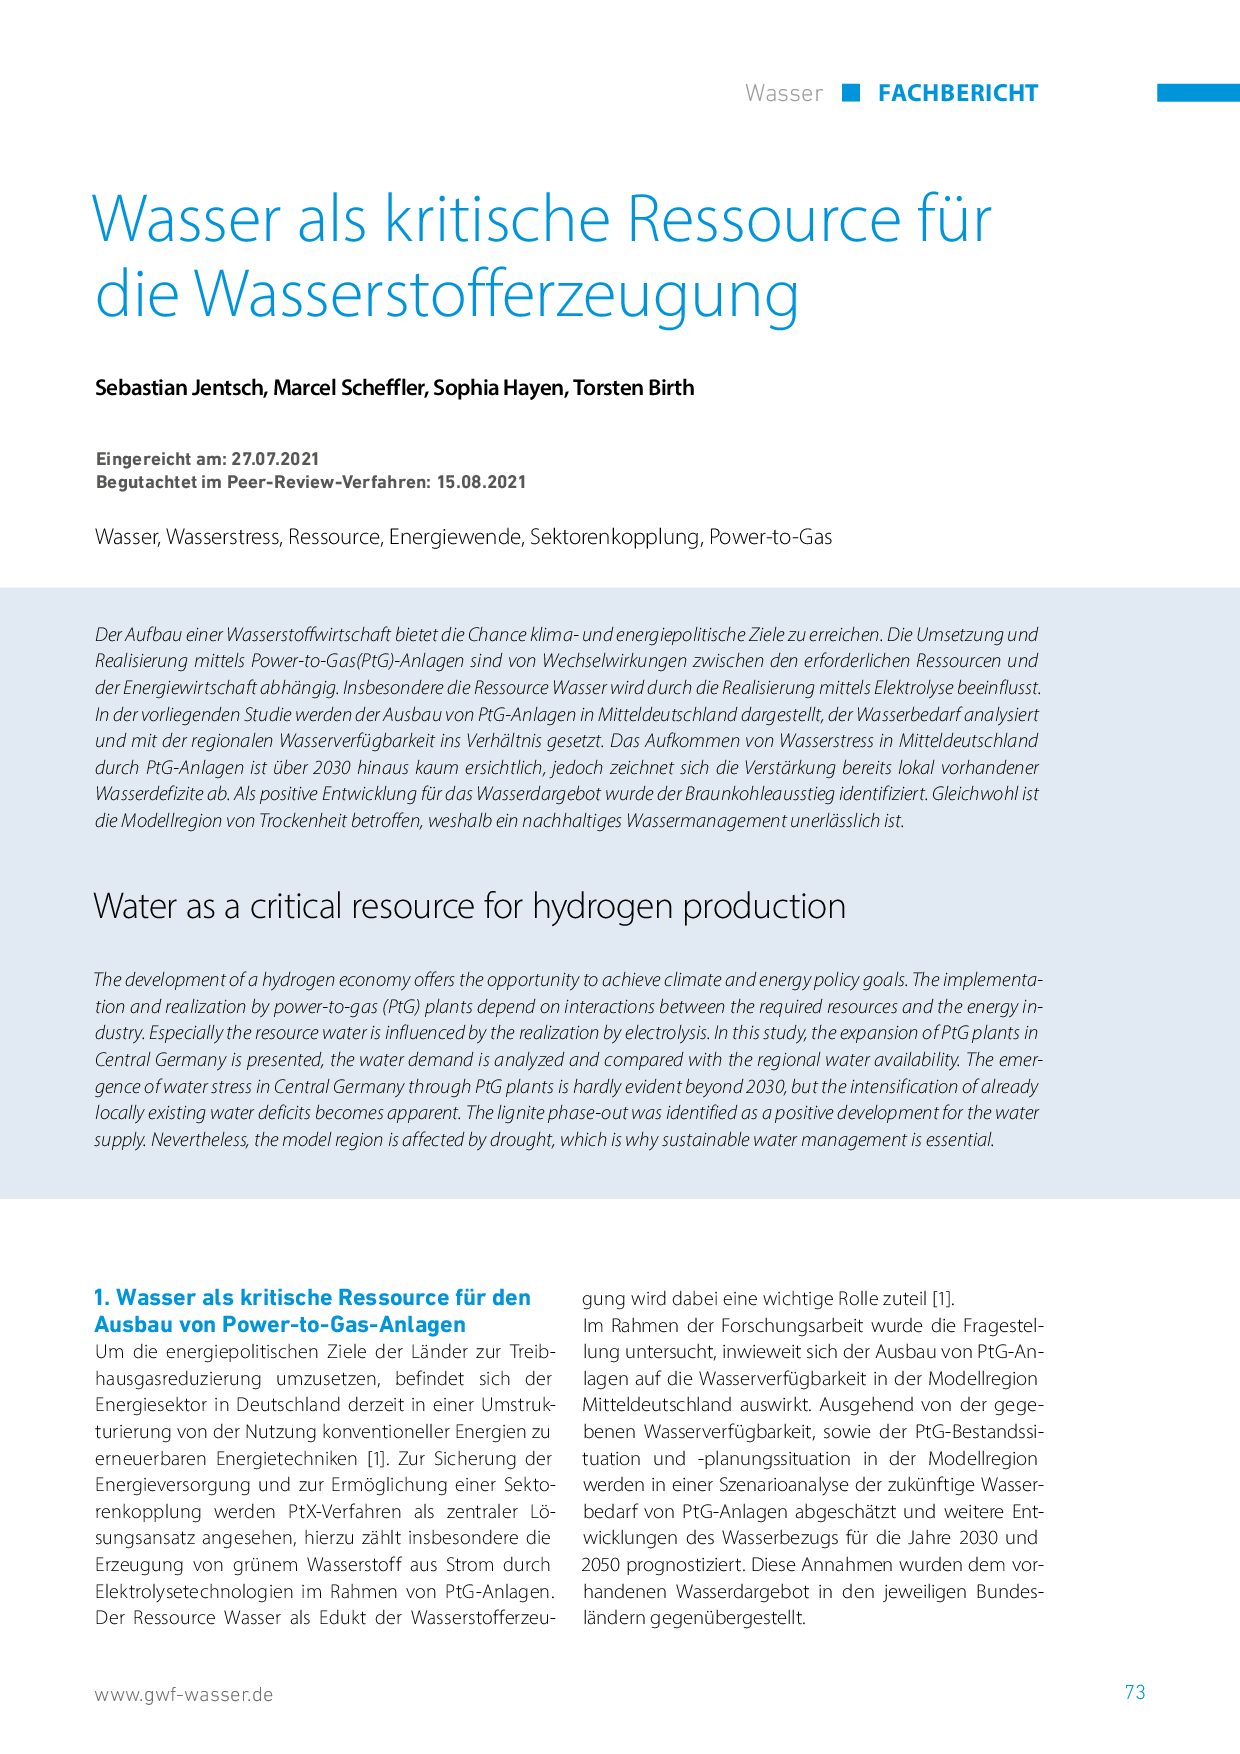 Wasser als kritische Ressource für die Wasserstofferzeugung